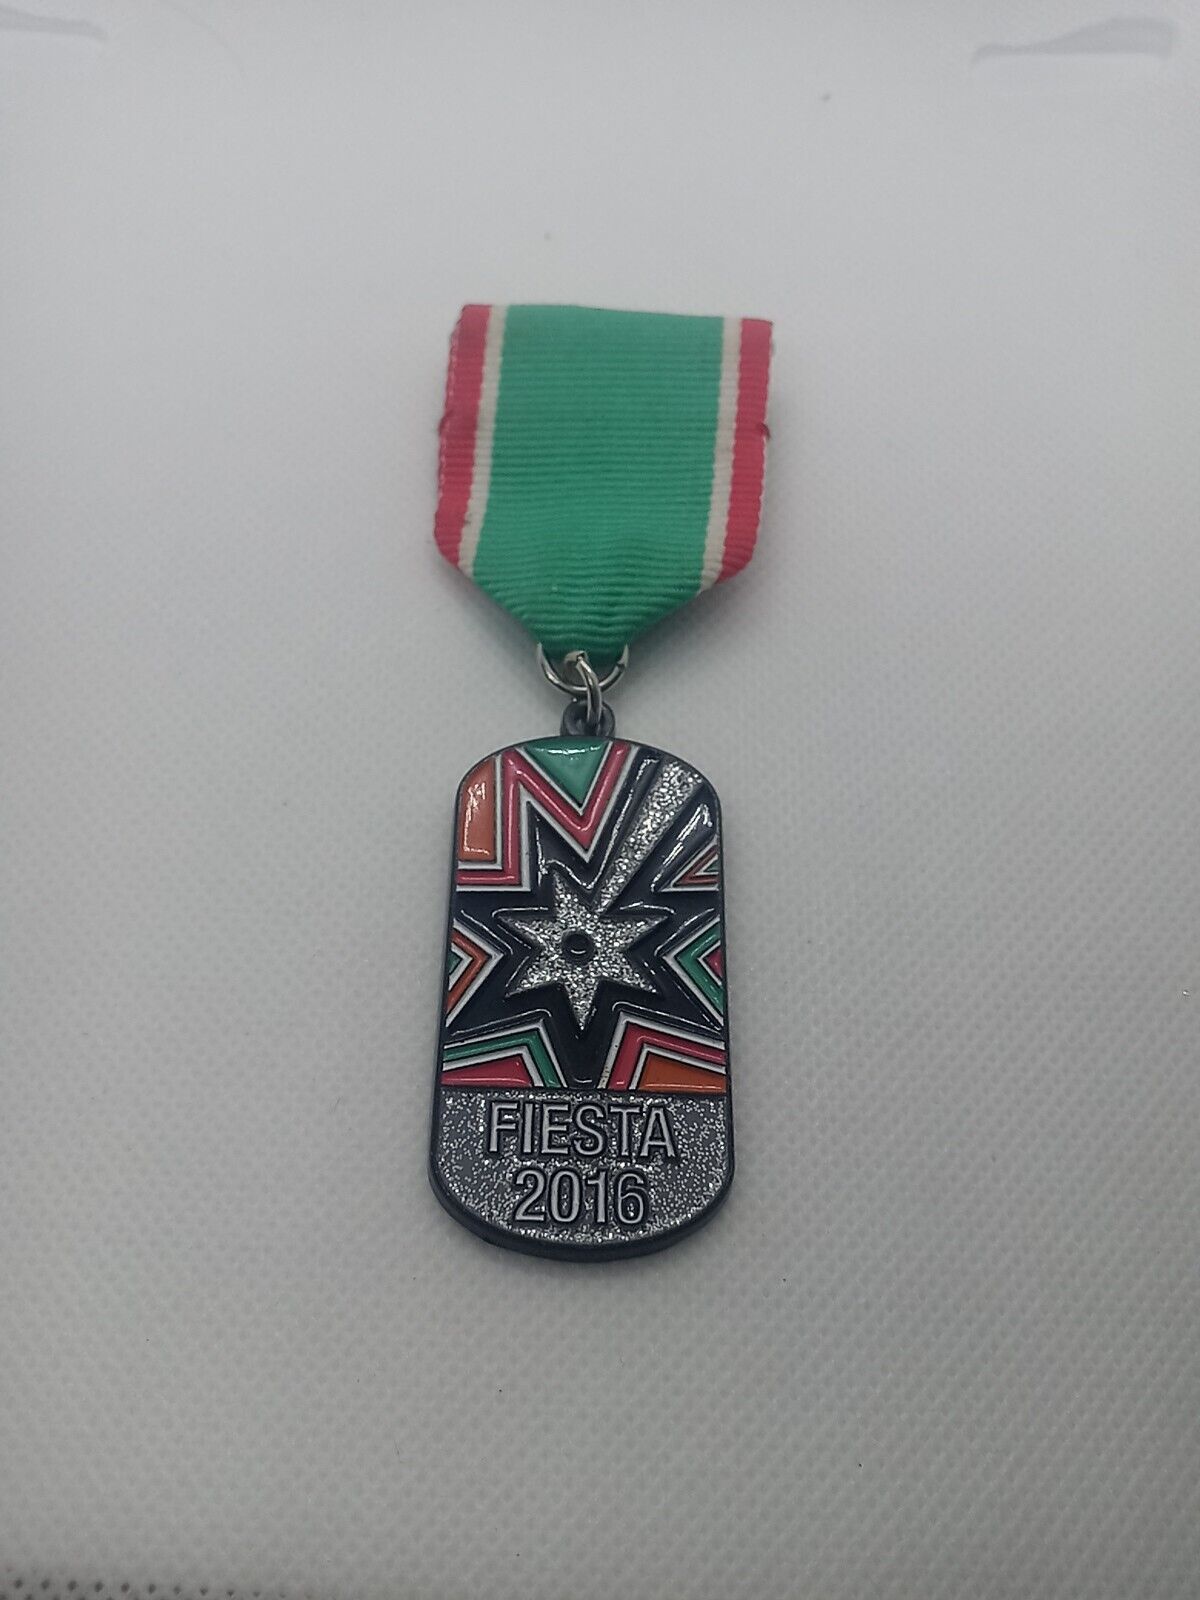 2016 San Antonio Spurs Fiesta Medal San Antonio